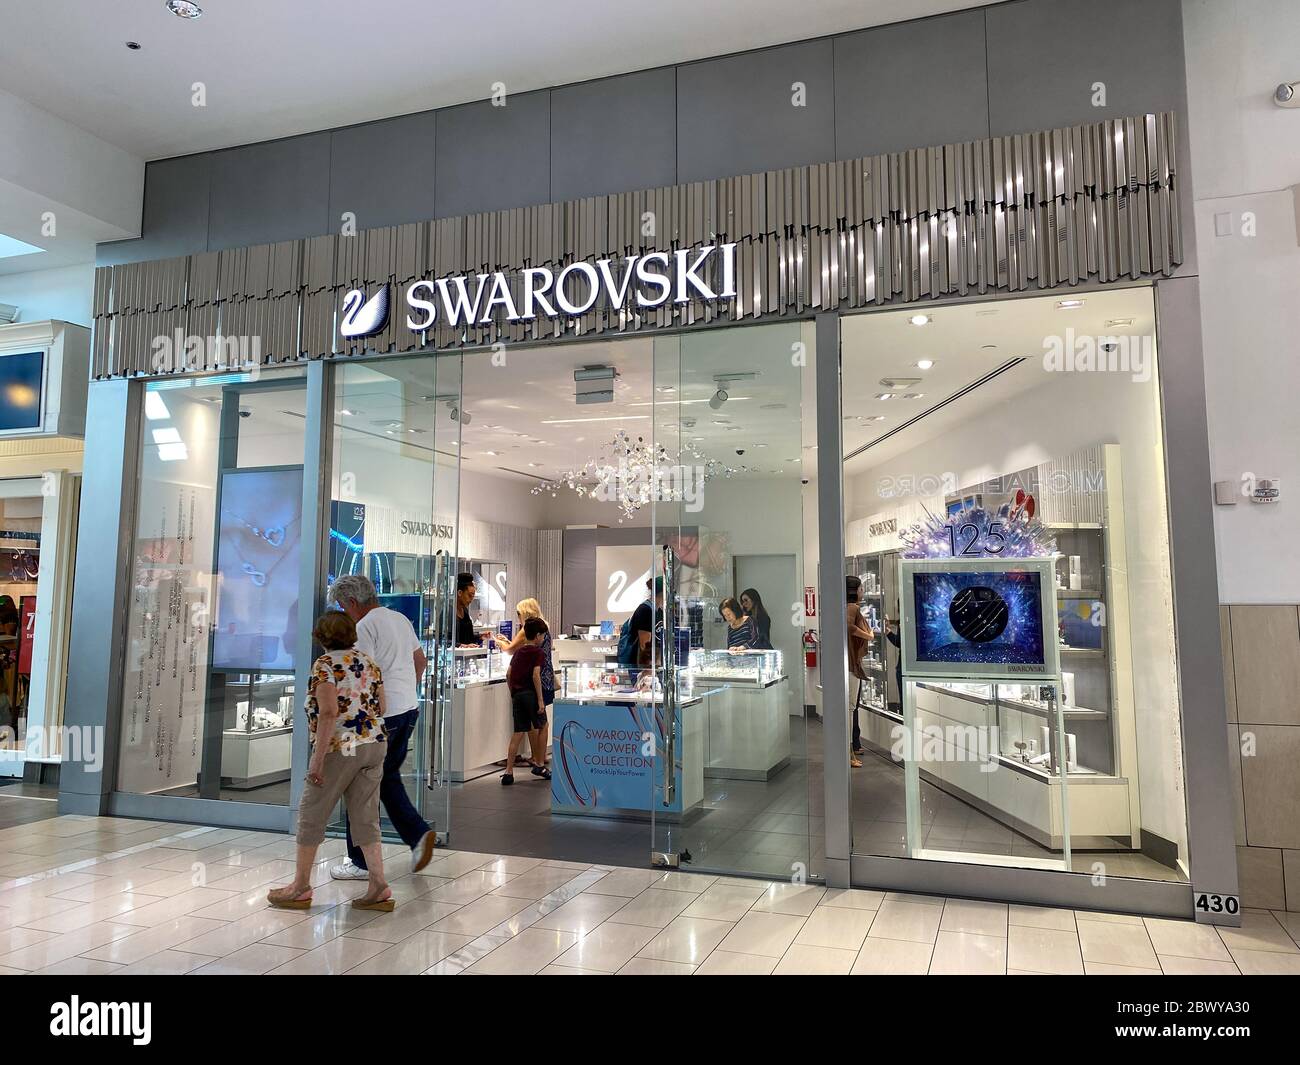 Orlando,FL/USA-2/17/20: La tienda de joyas Swarovski en el centro comercial  de la milenia en Orlando, Florida Fotografía de stock - Alamy